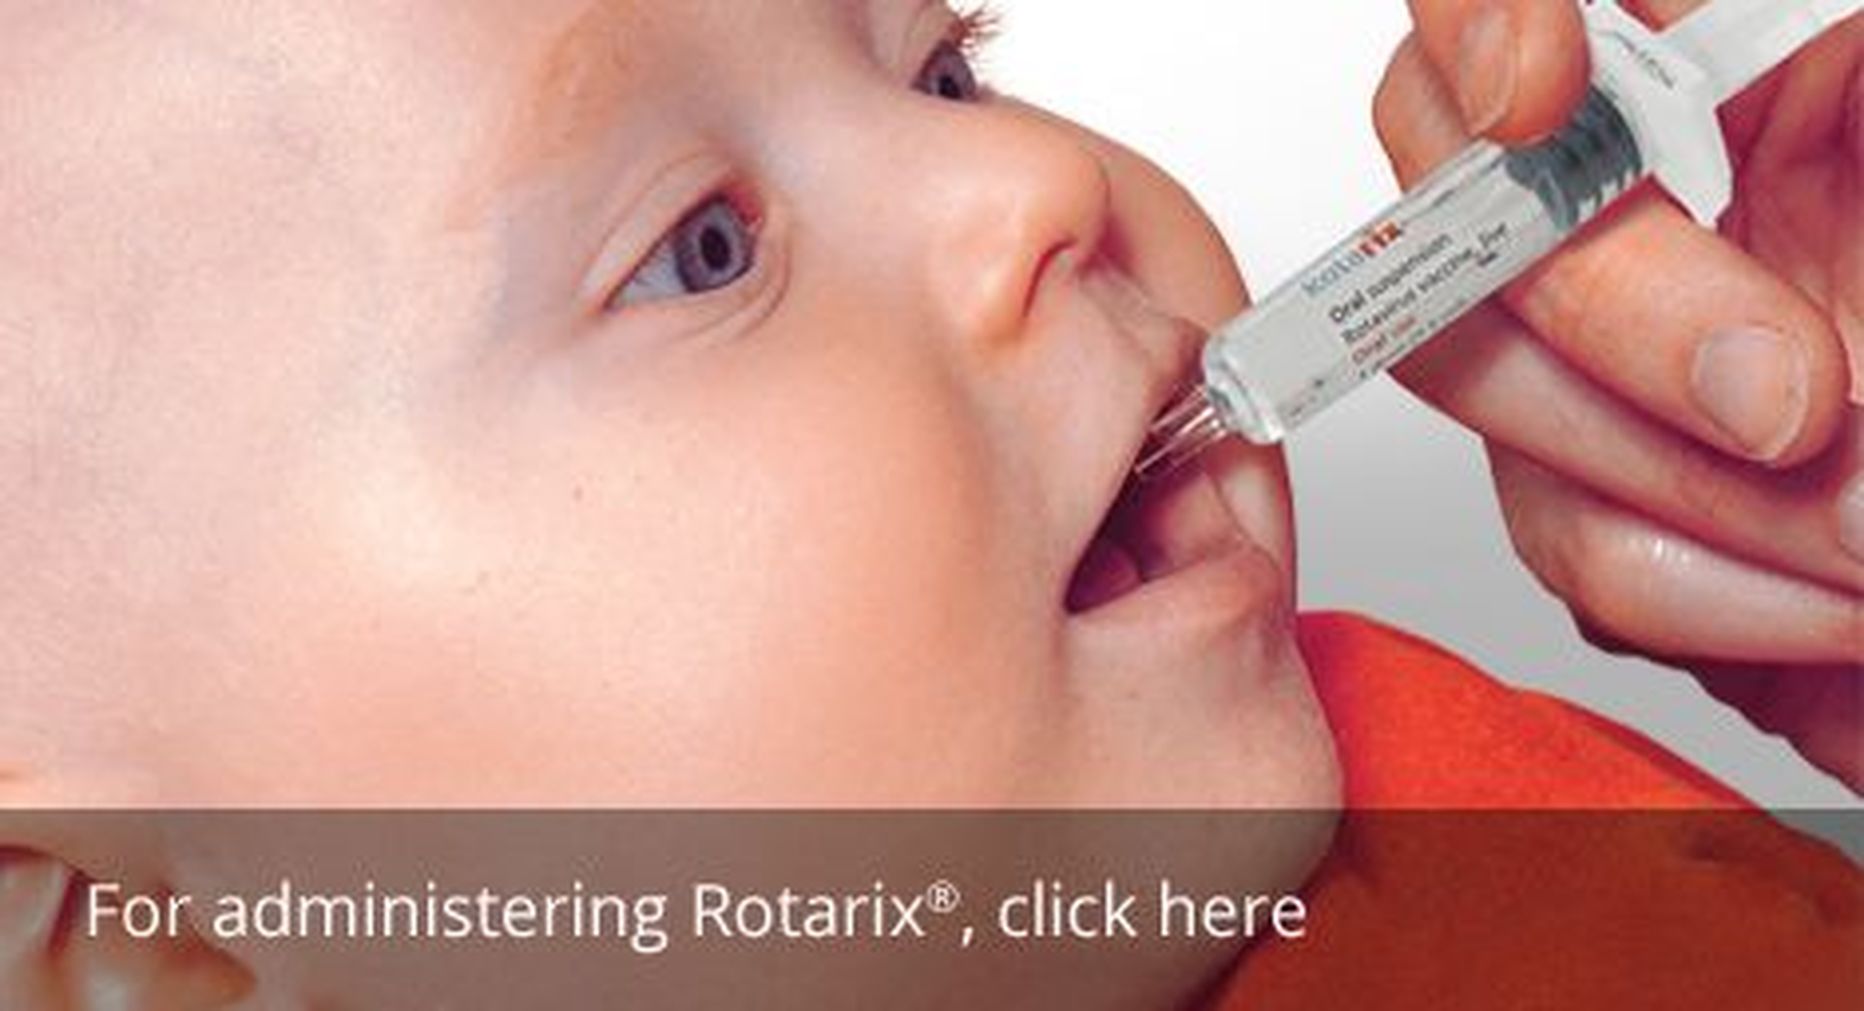 Rotarixi vaktsiini manustamine.